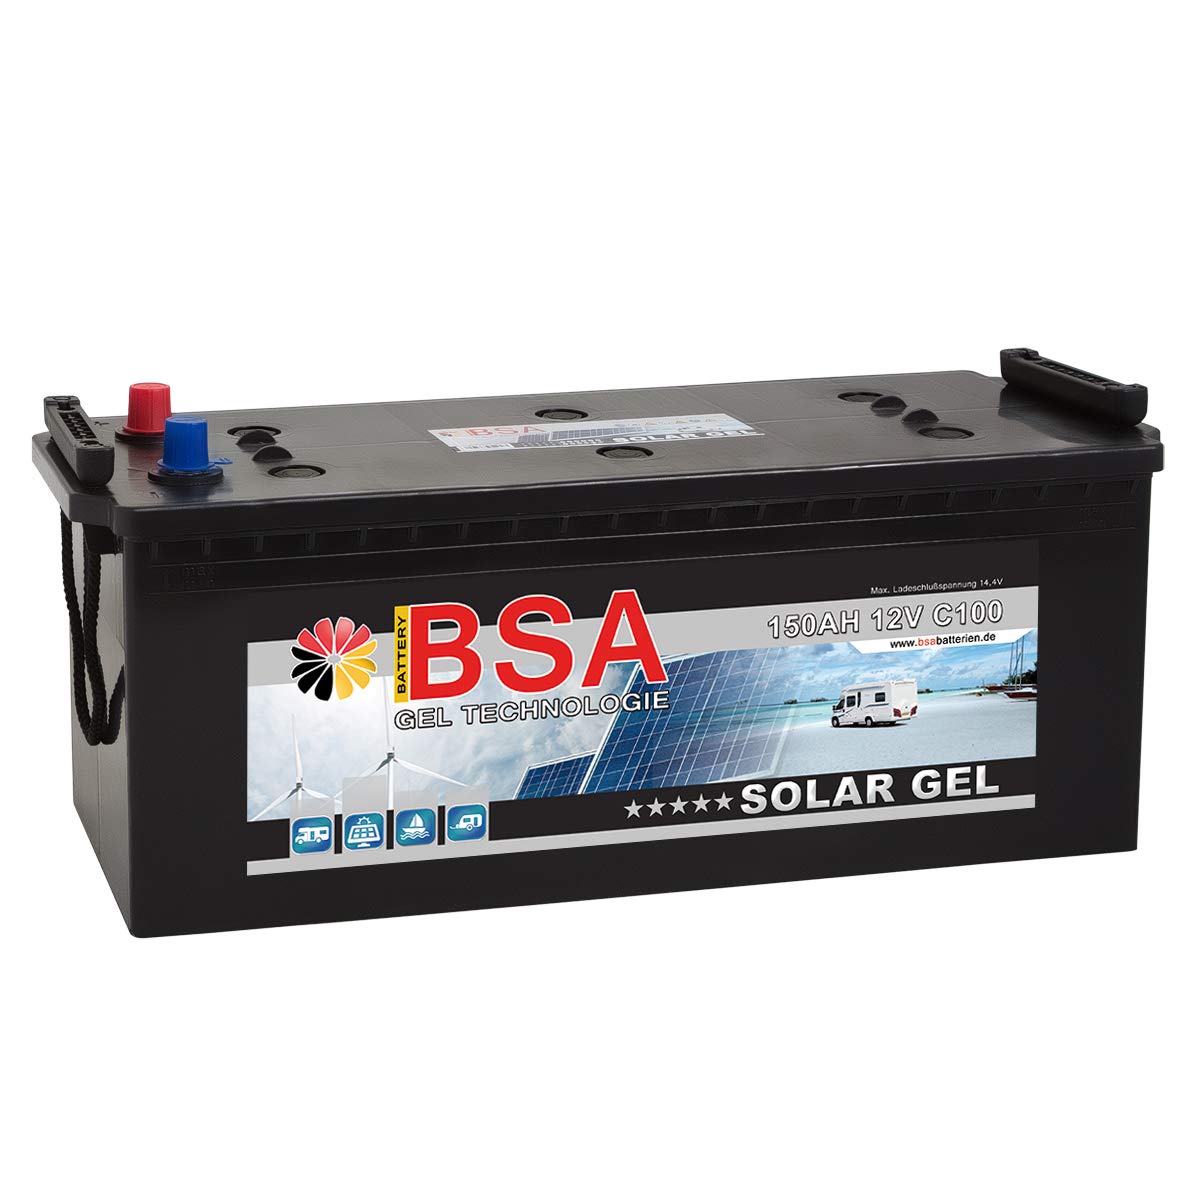 Gel Batterie 150Ah 12V Blei Gel Solarbatterie Wohnmobil Boot Versorgungsbatterie statt 120Ah 130Ah 140Ah